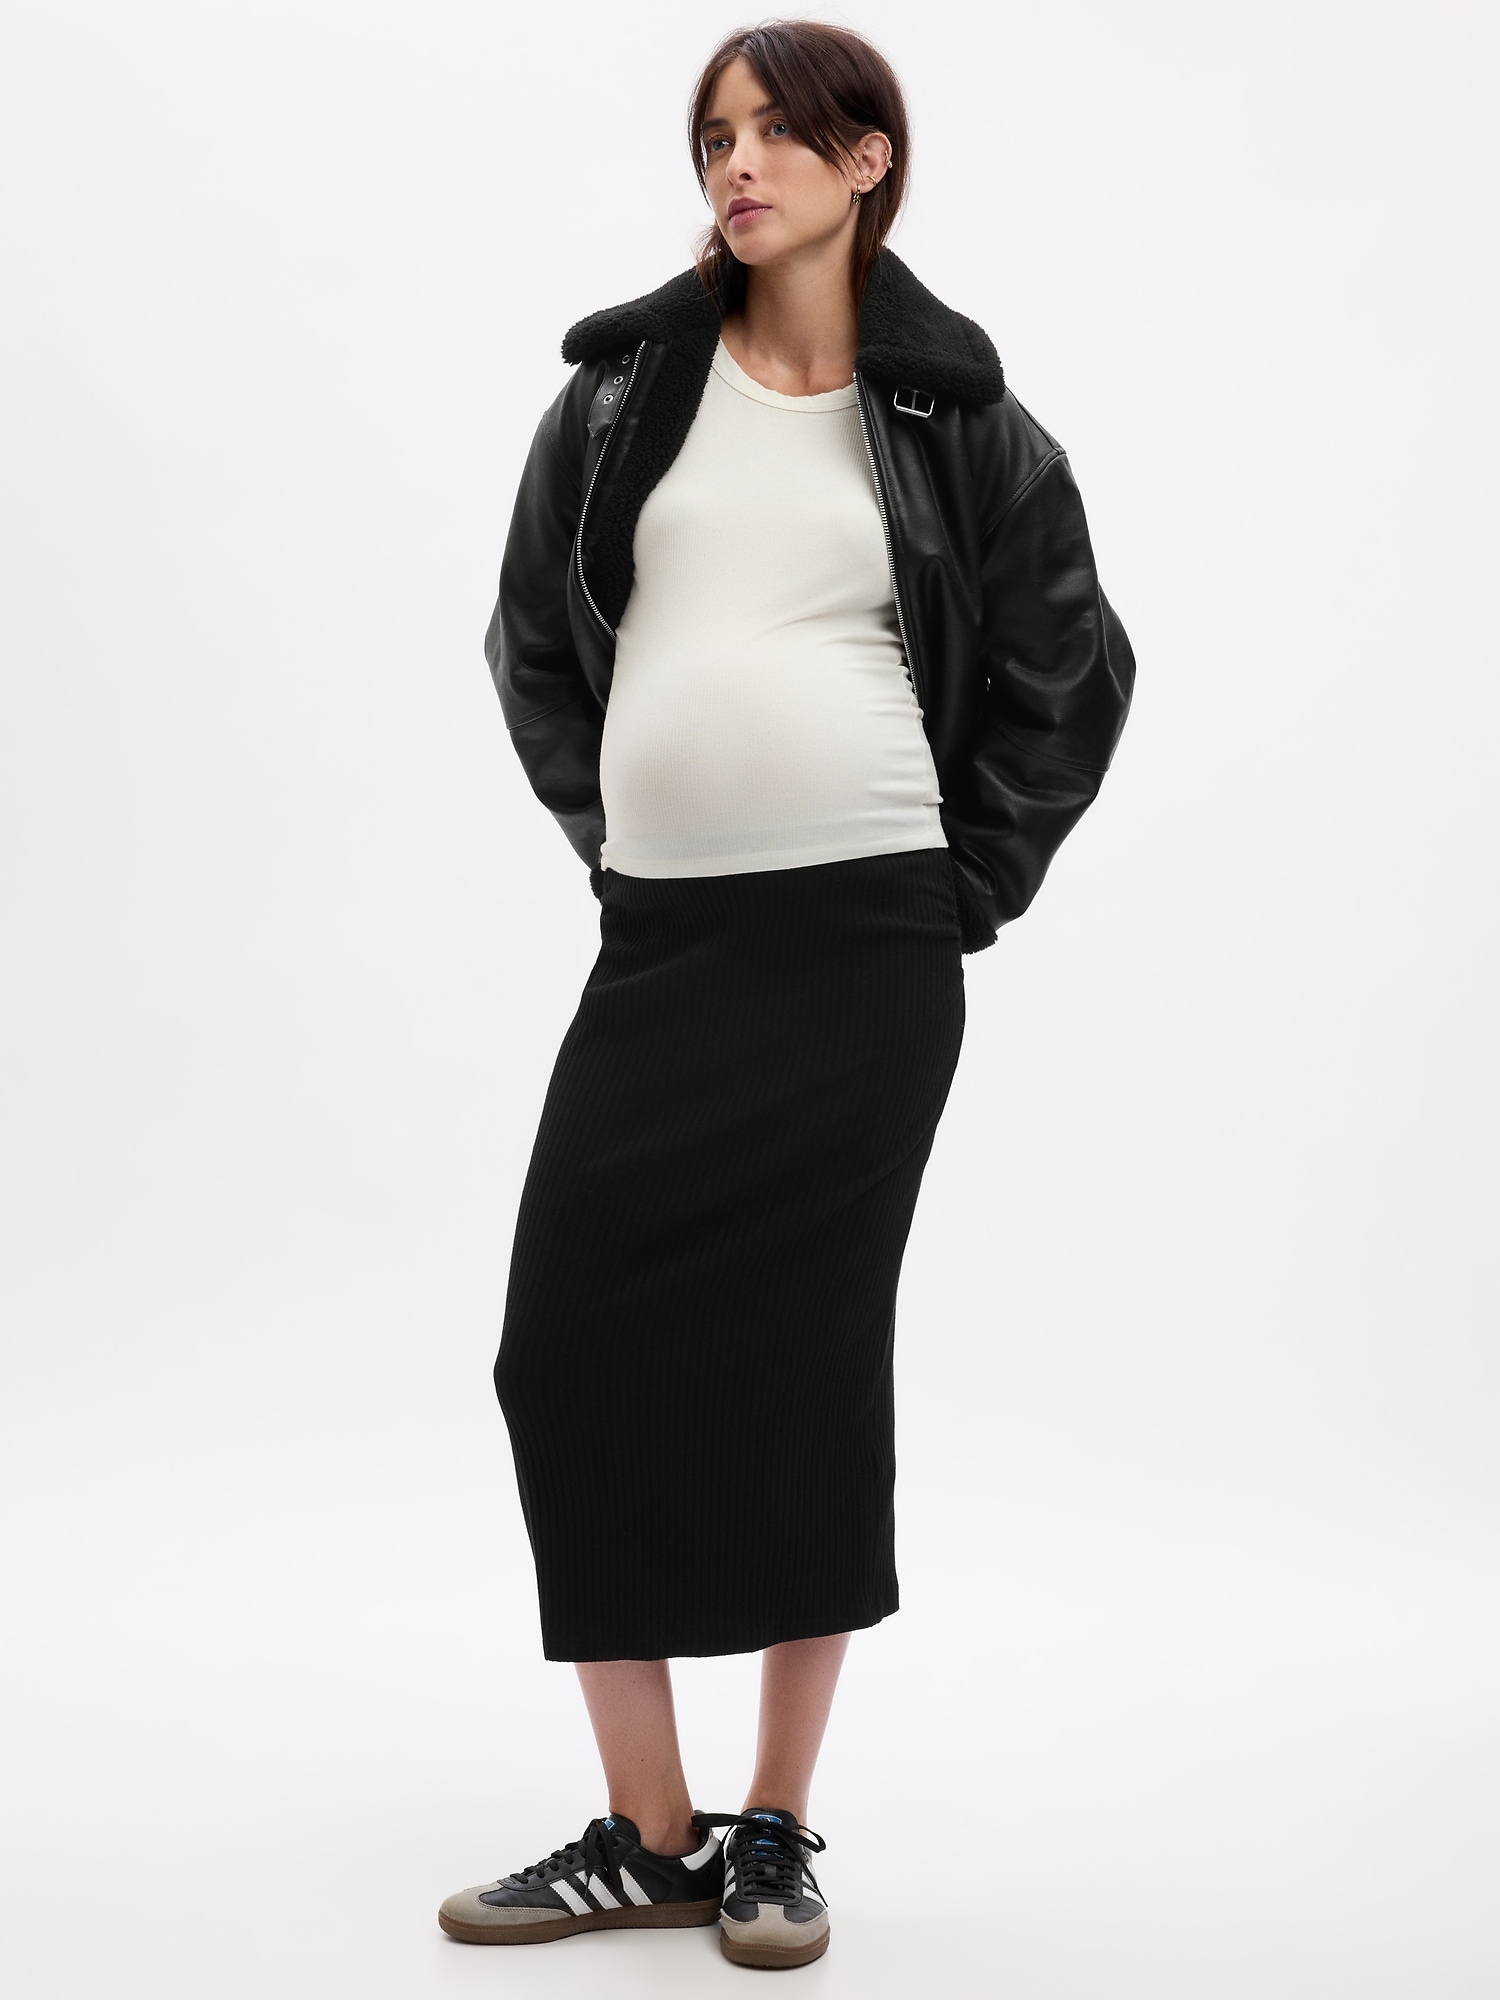 Binsi MaternityPrima Mama Birthing Skirt Size Small